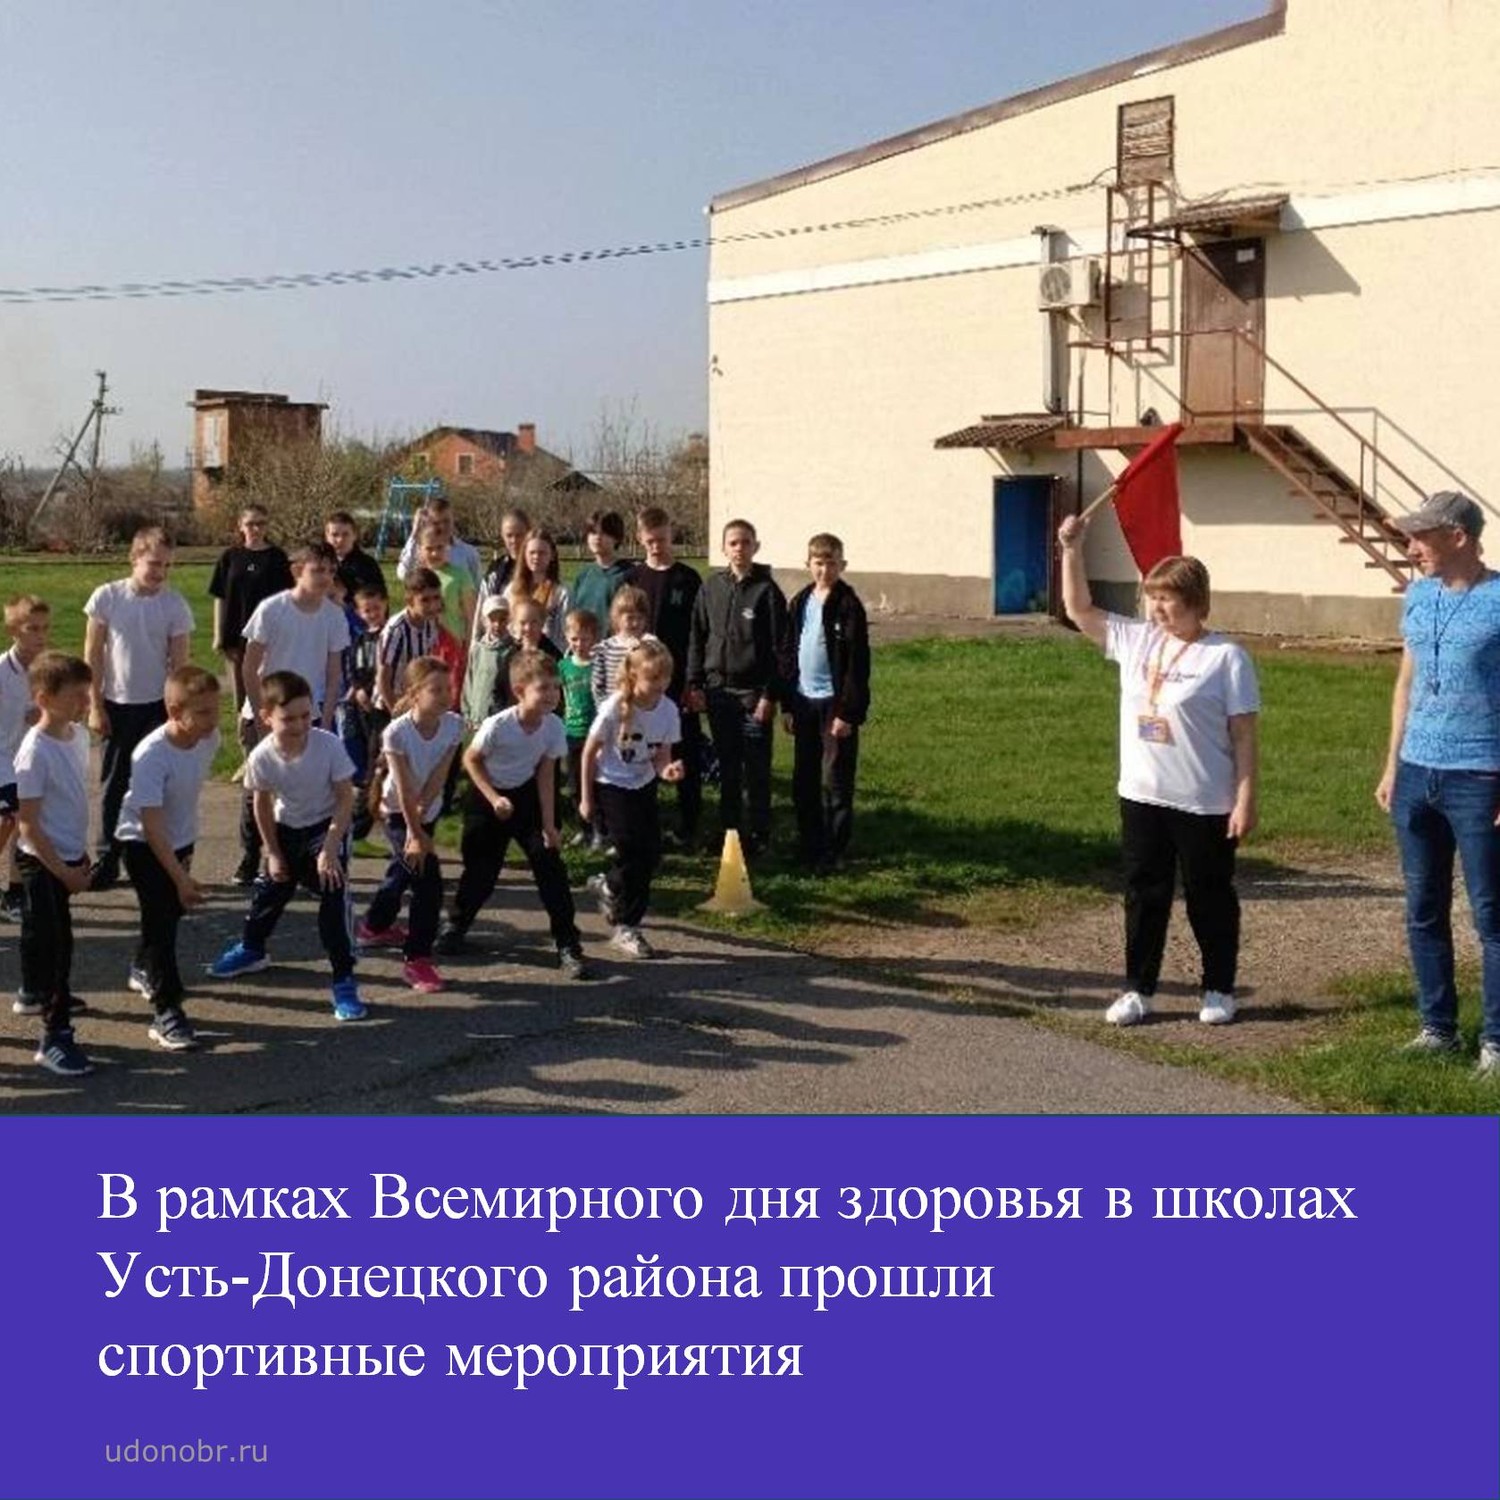 В рамках Всемирного дня здоровья в школах Усть-Донецкого района прошли спортивные мероприятия